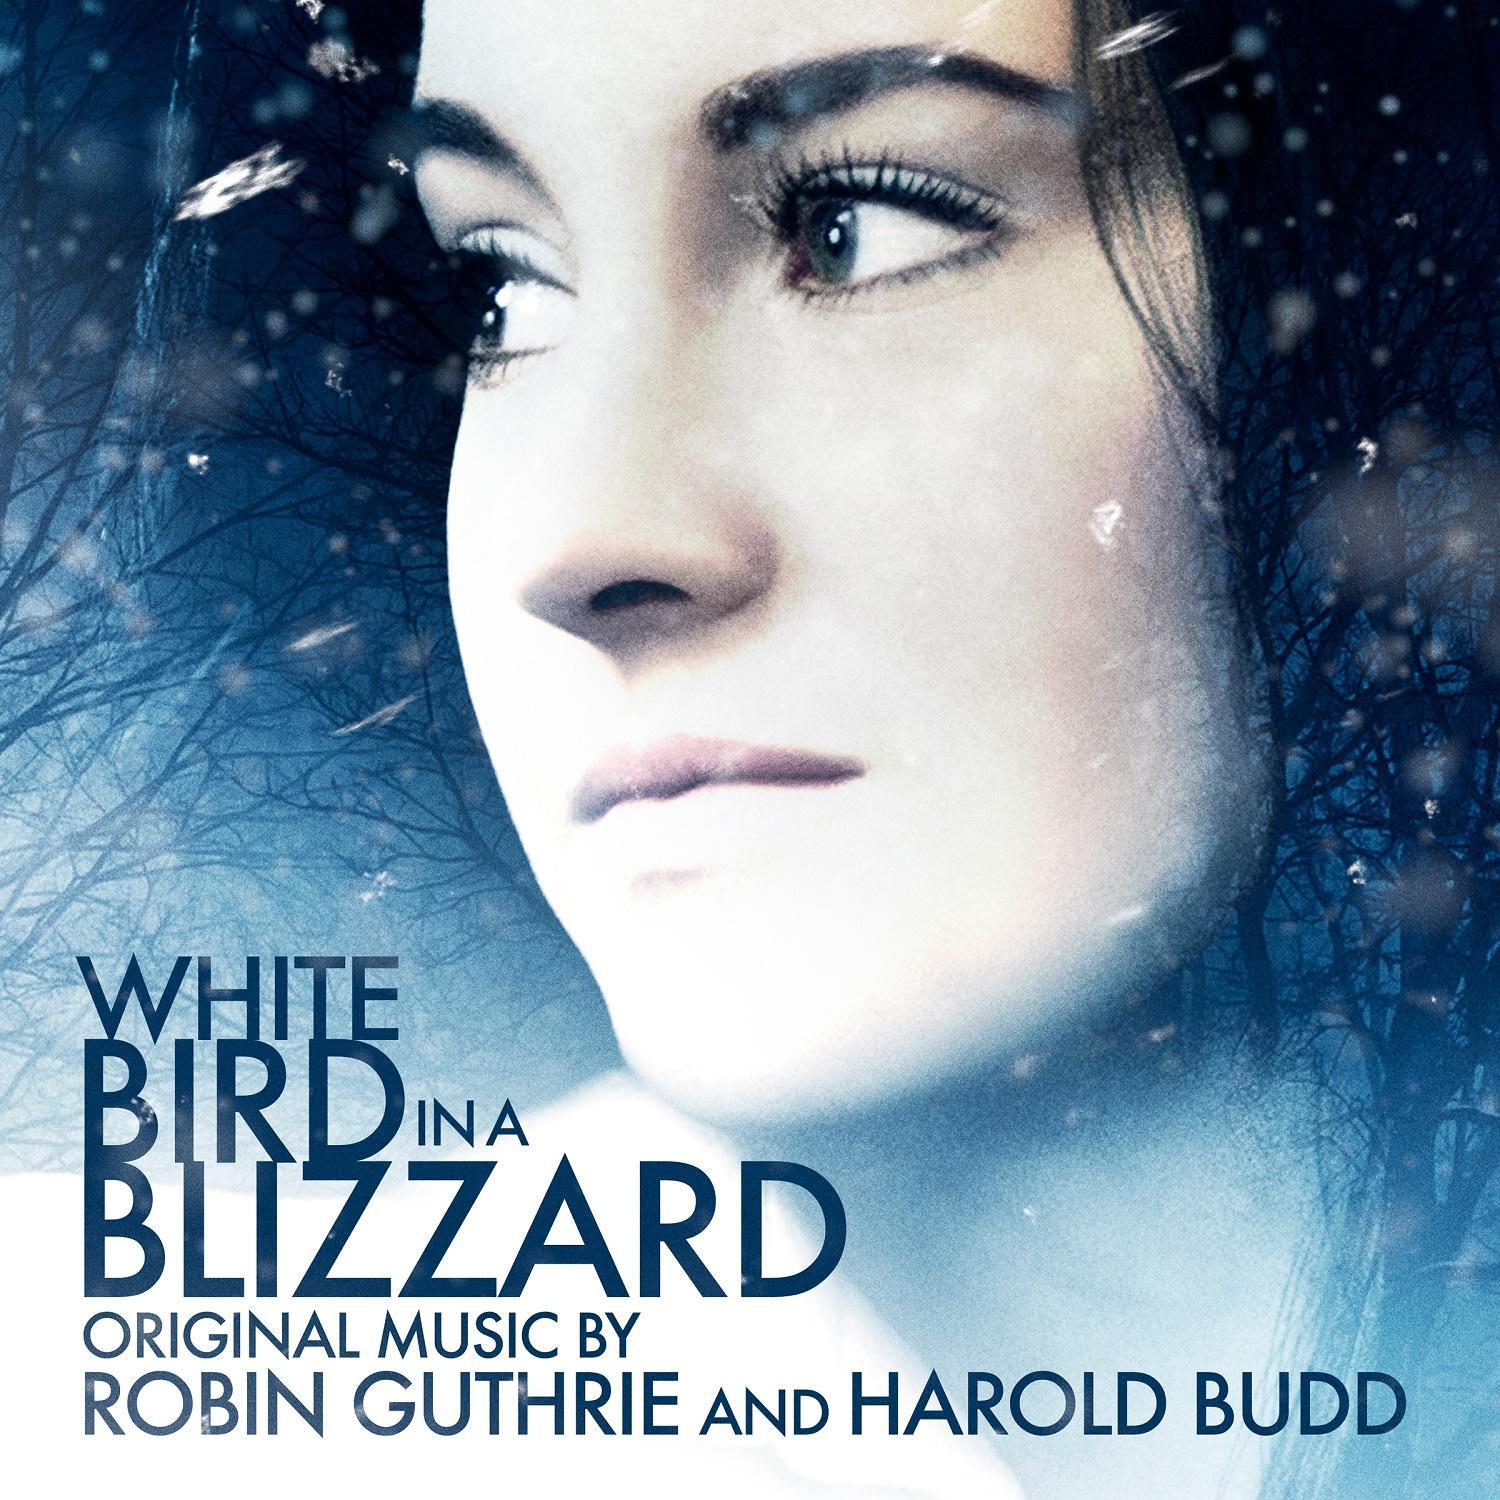 White Bird in a Blizzard (Original Motion Picture Soundtrack)